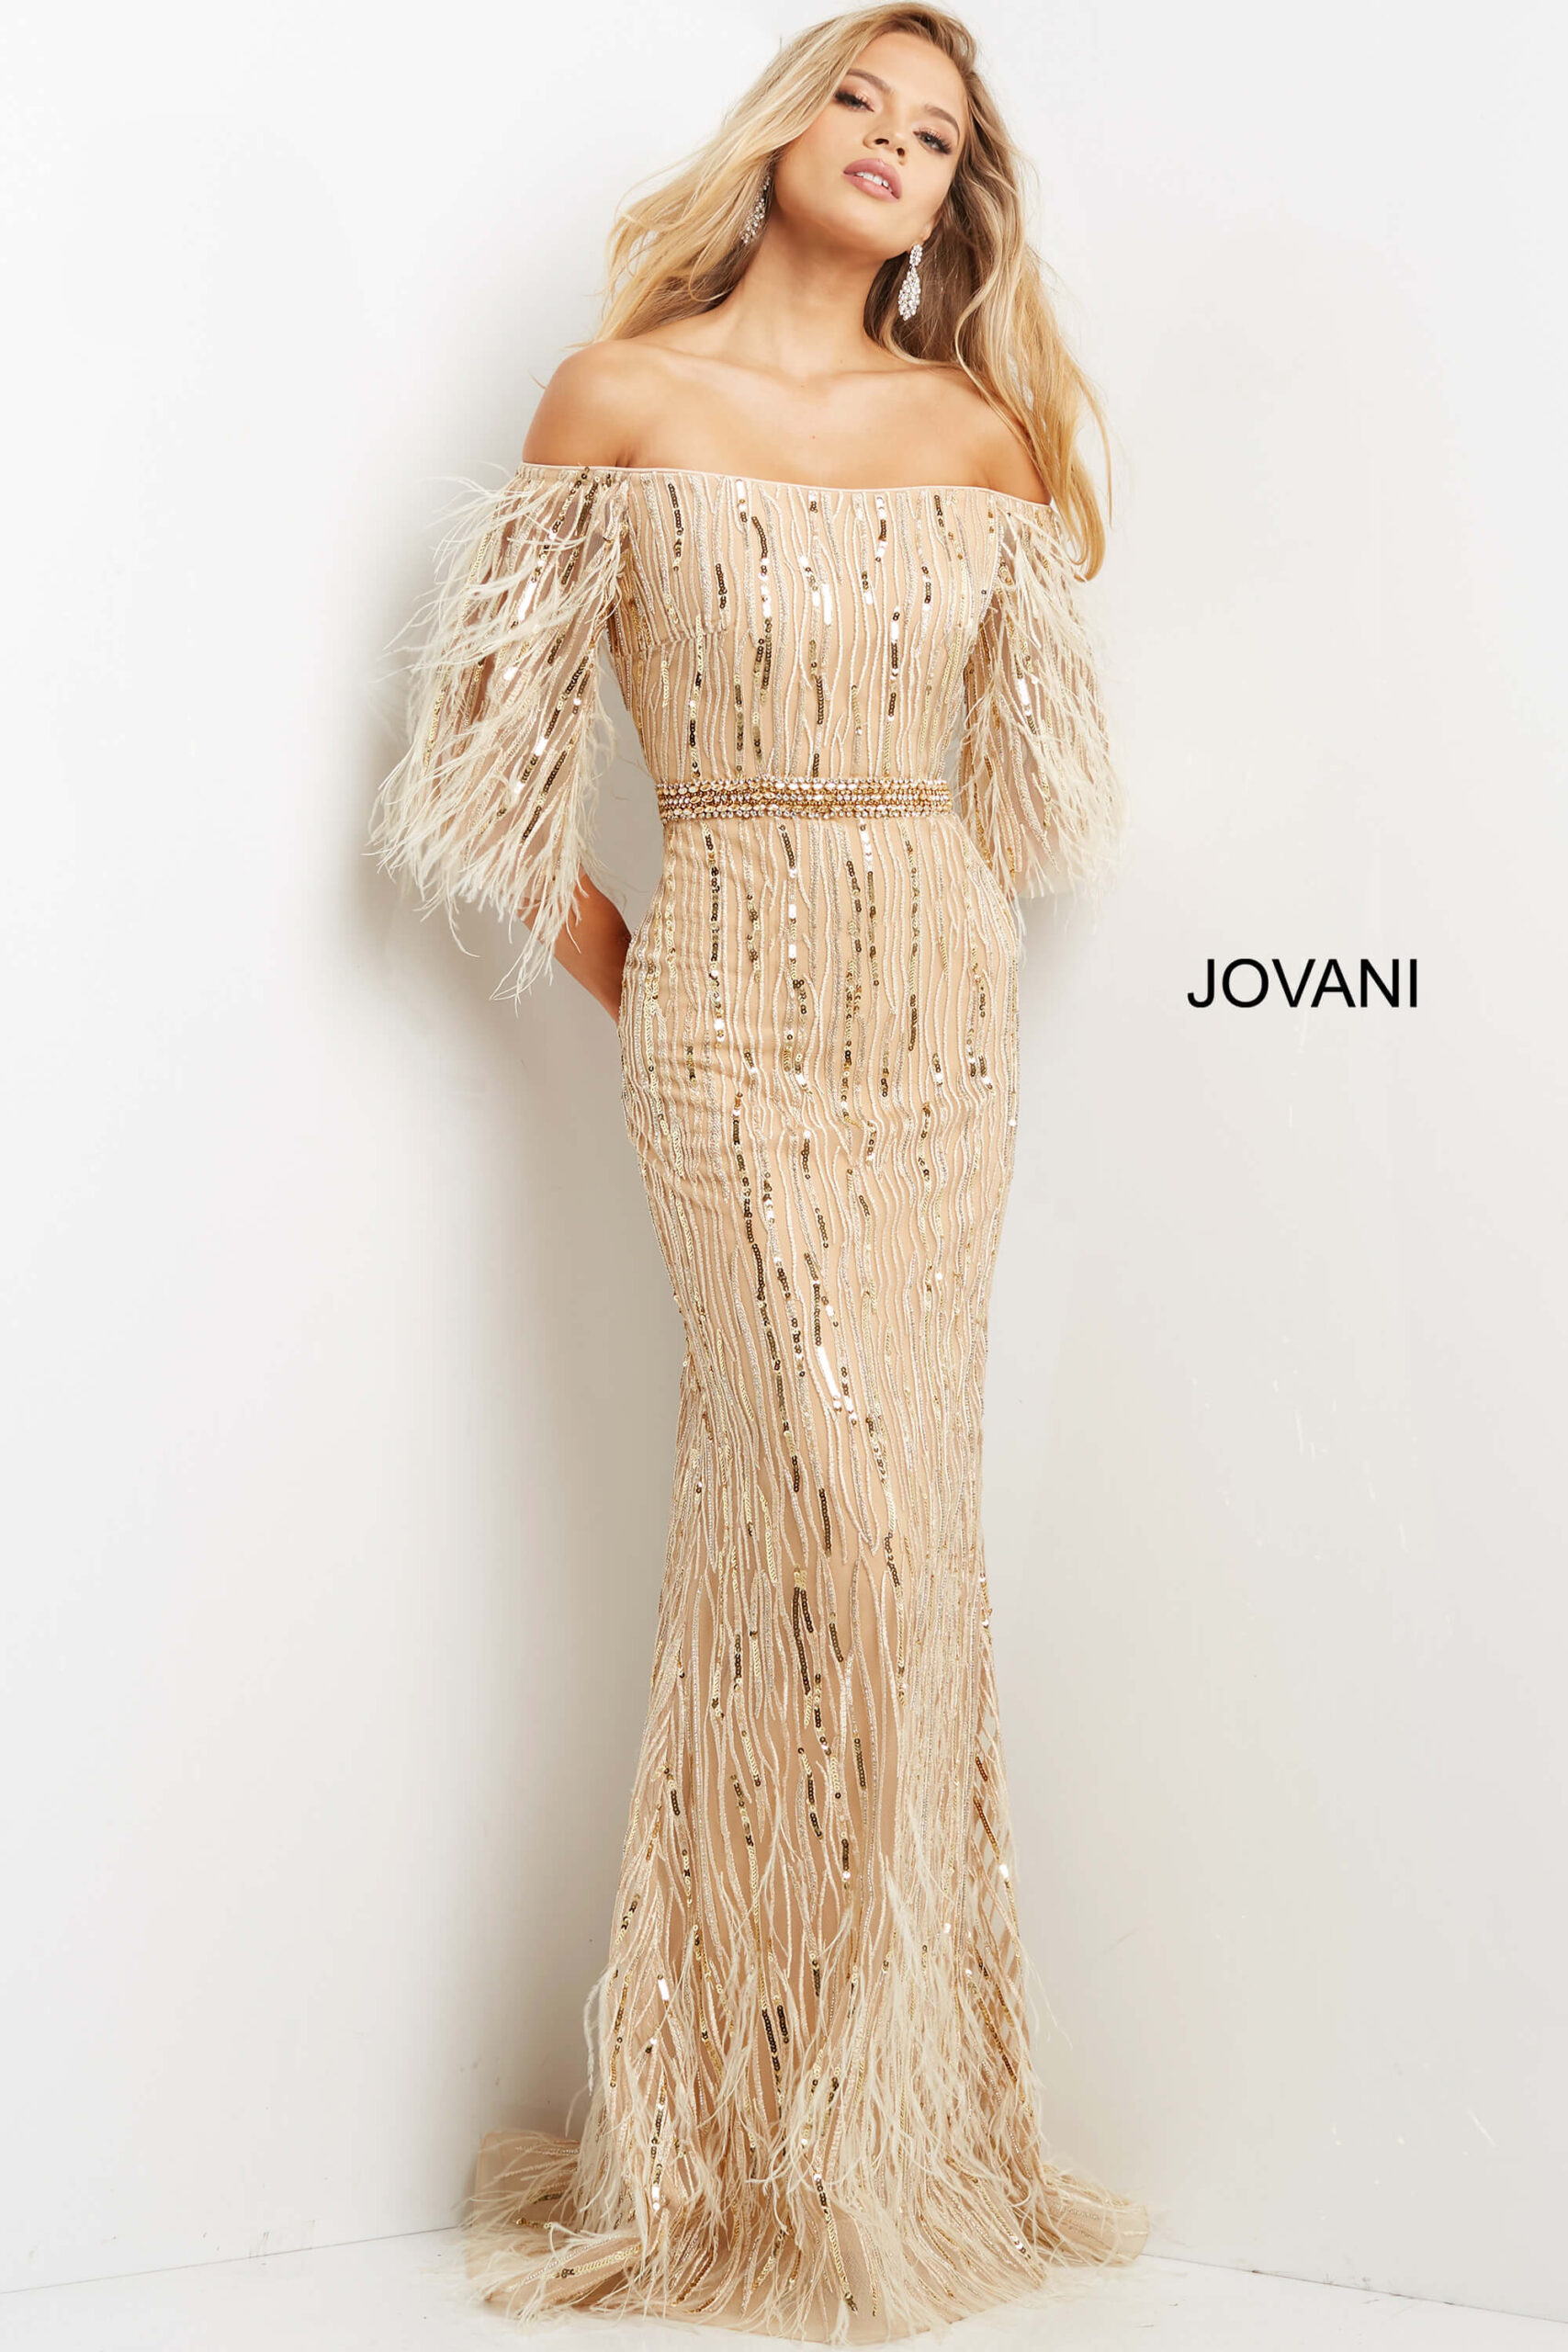 Jovani 07195 Cream Embellished Feather Sleeve Dress